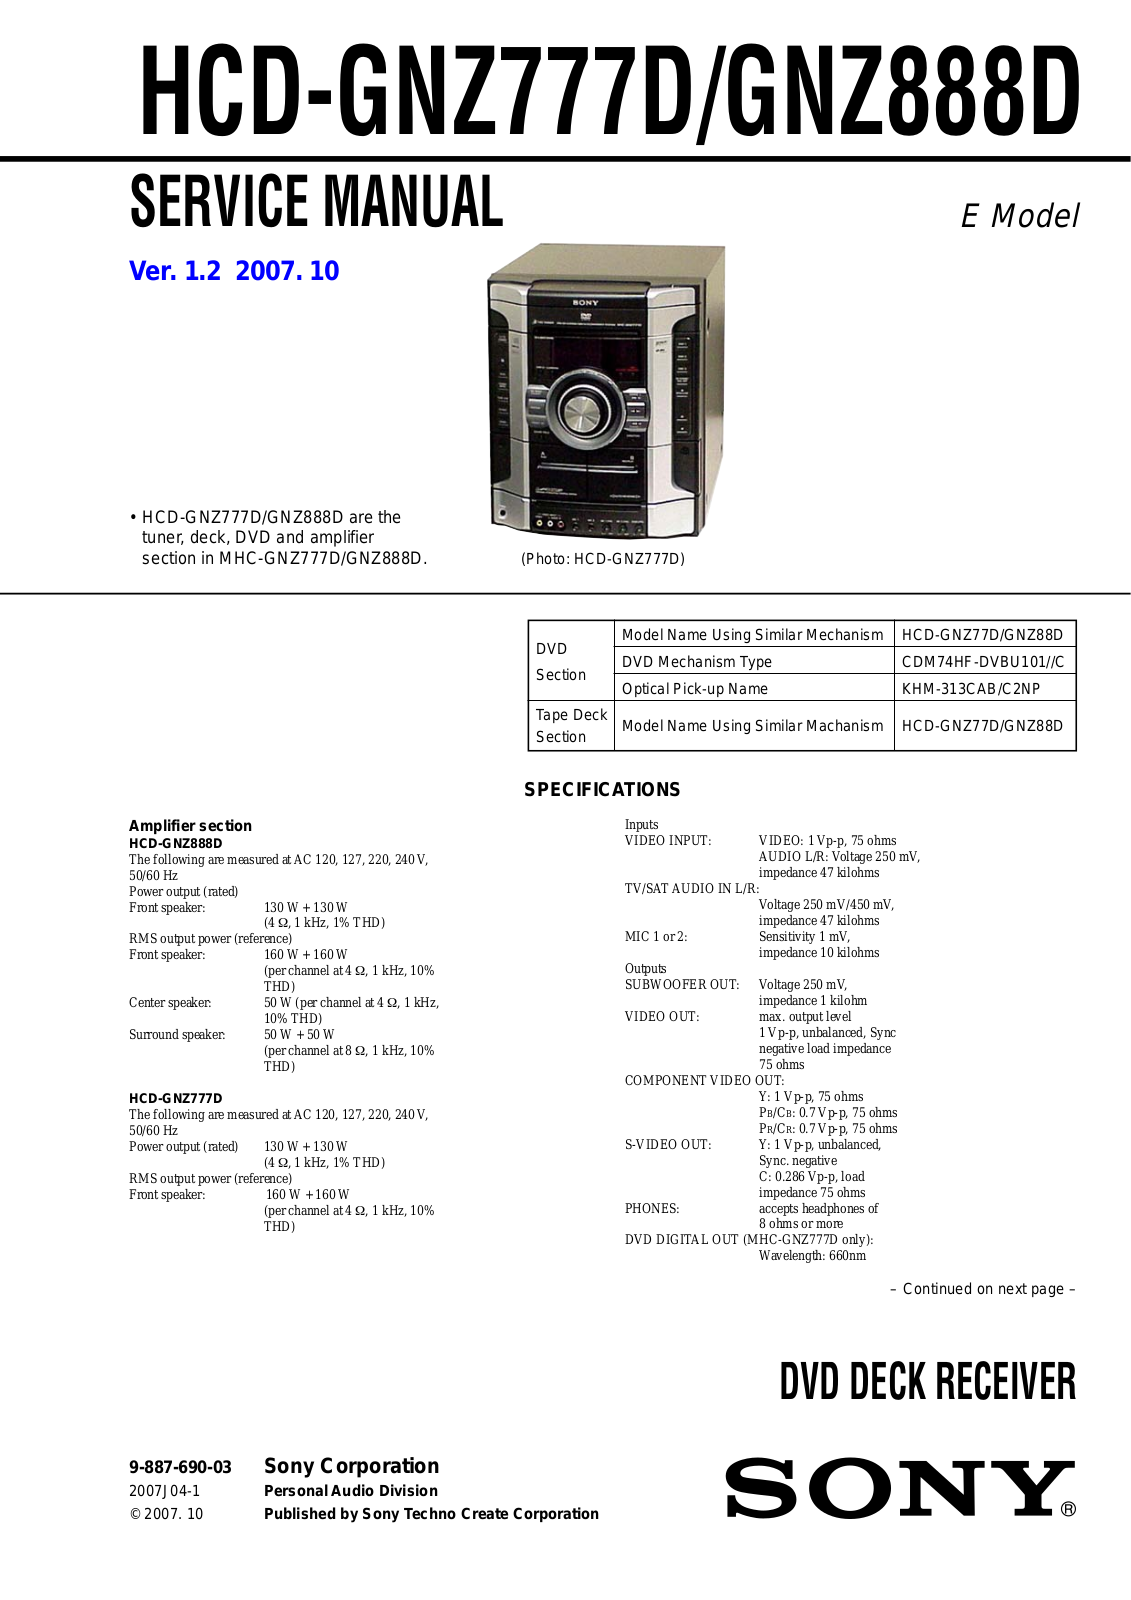 Sony HCD-GNZ777D, HCD-GNZ888D Service Manual